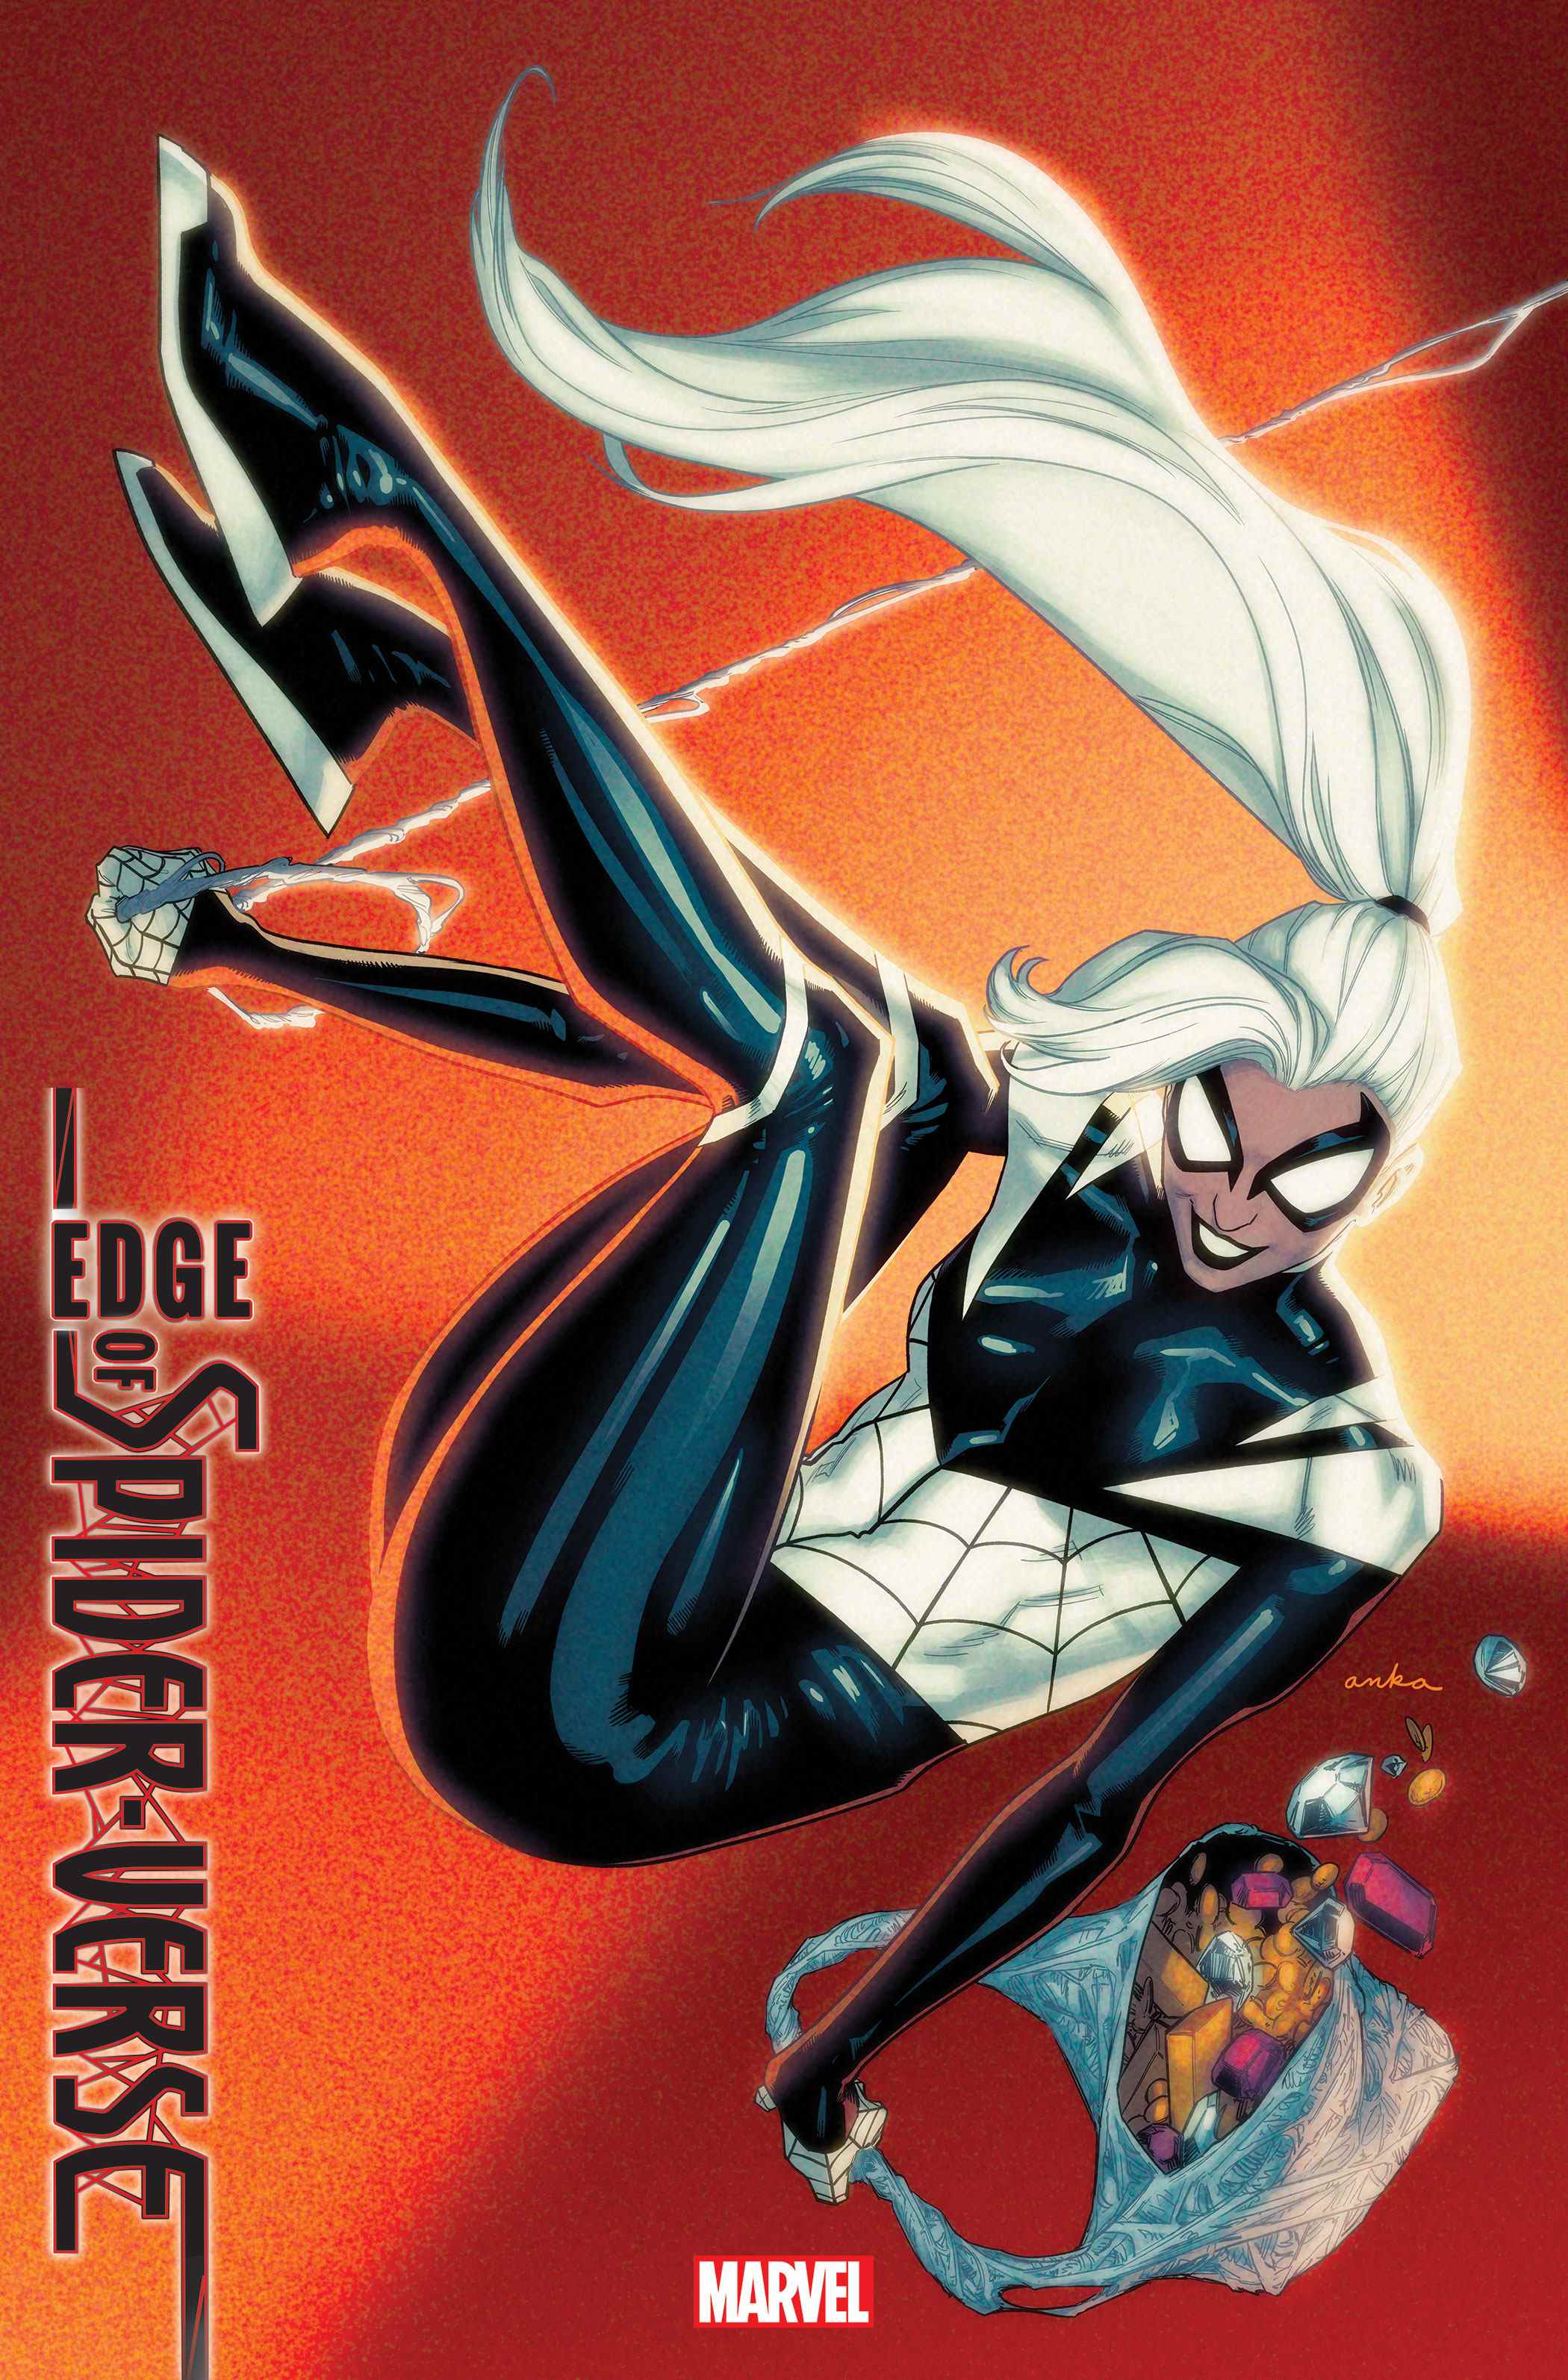 Couverture de la variante Edge of Spider-Verse # 3 par Kris Anka